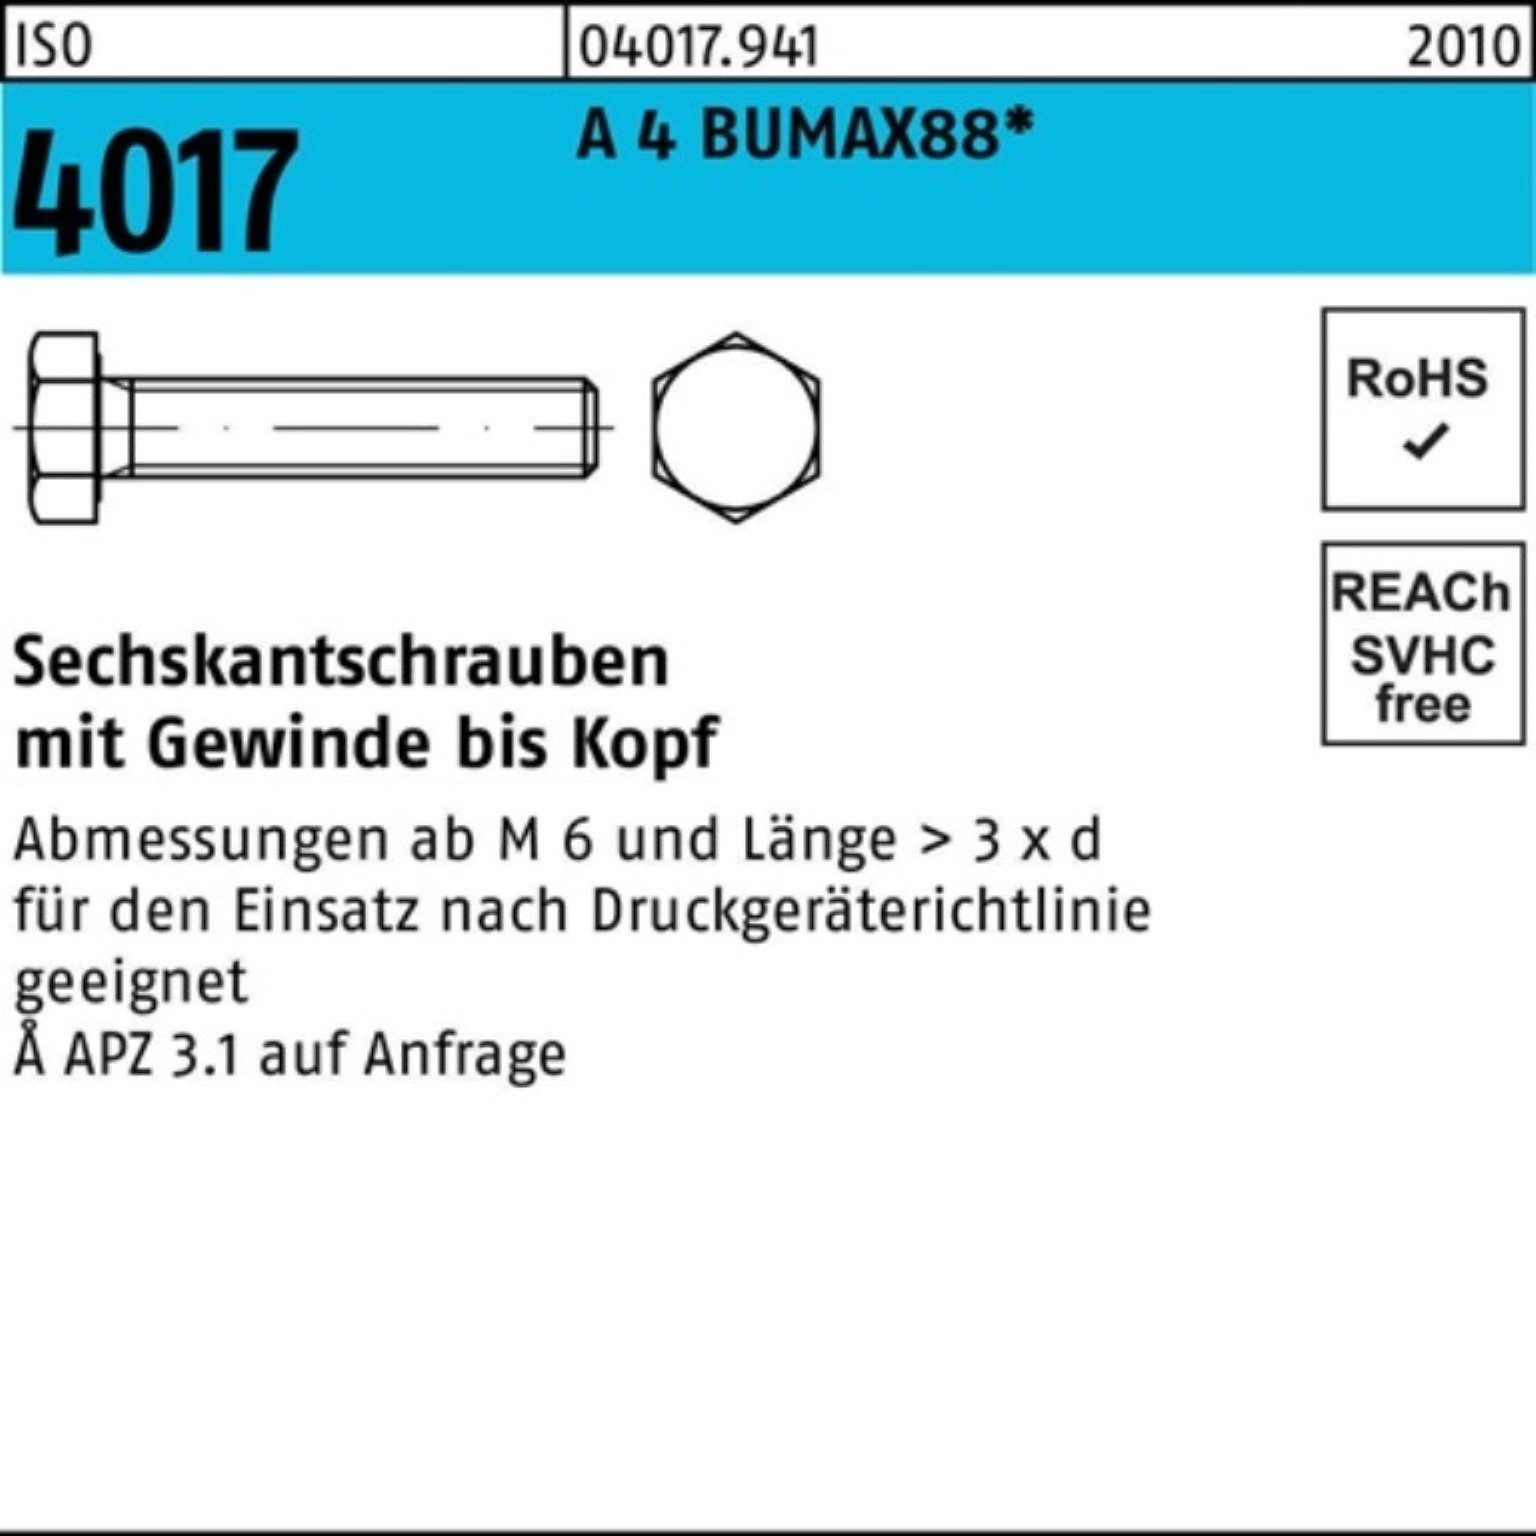 A 4 BUMAX88 Pack 4017 ISO Bufab 30 VG 50 Sechskantschraube Sechskantschraube M10x 100er Stück